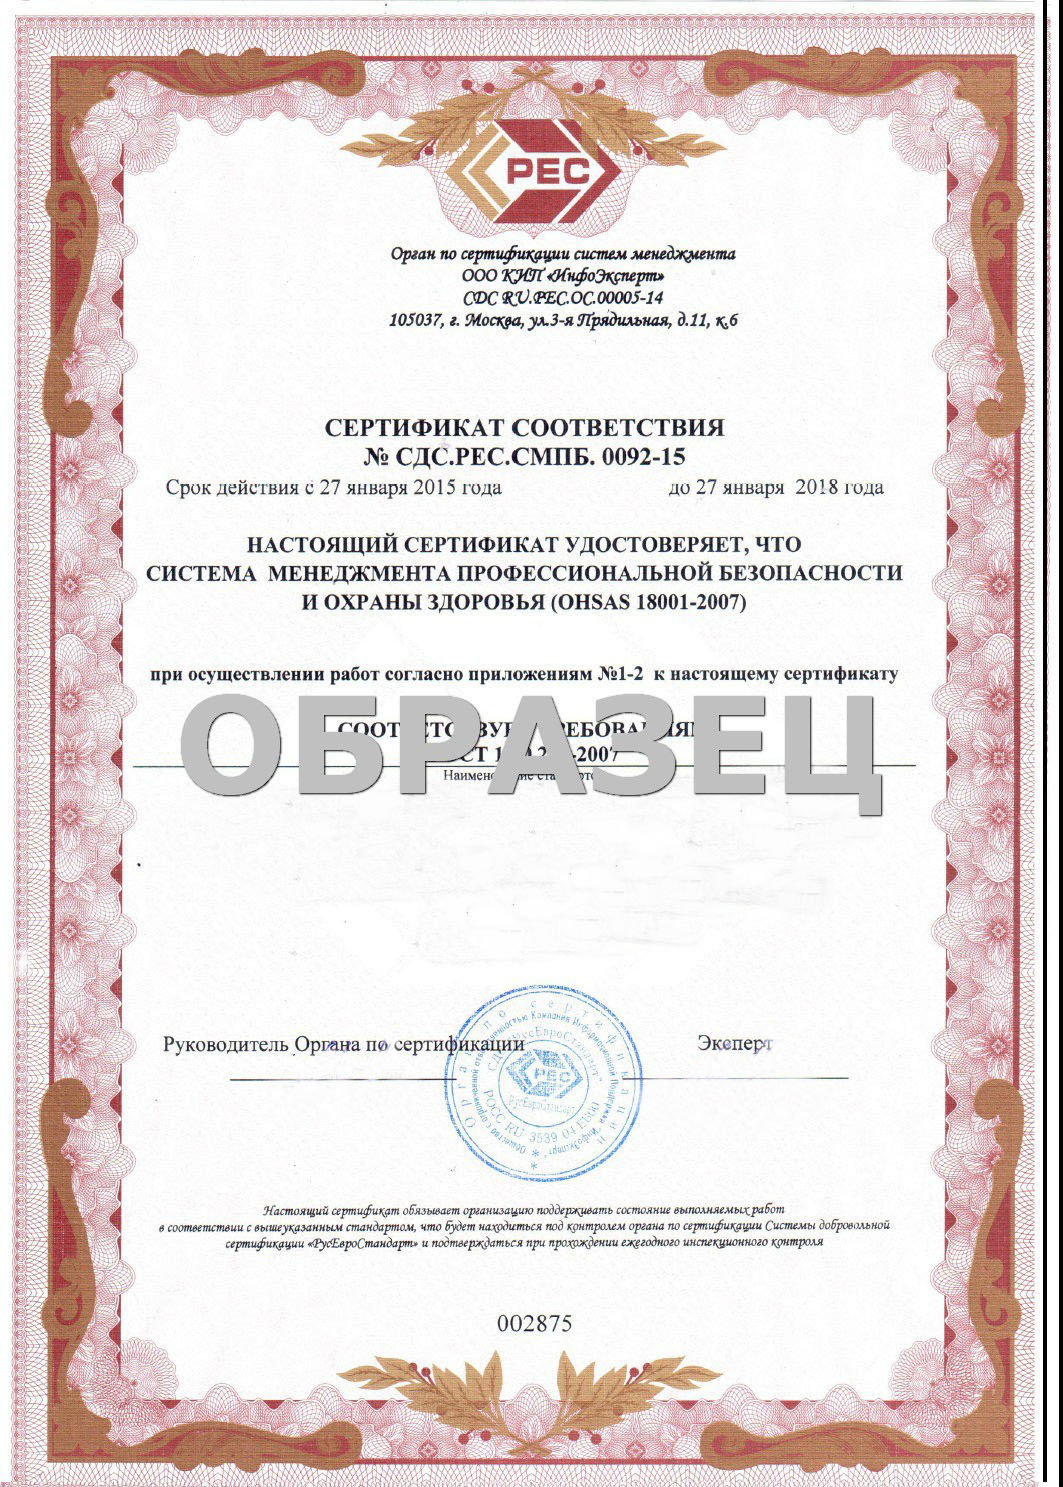      12.0.230-2007 (OHSAS 18001:2007)